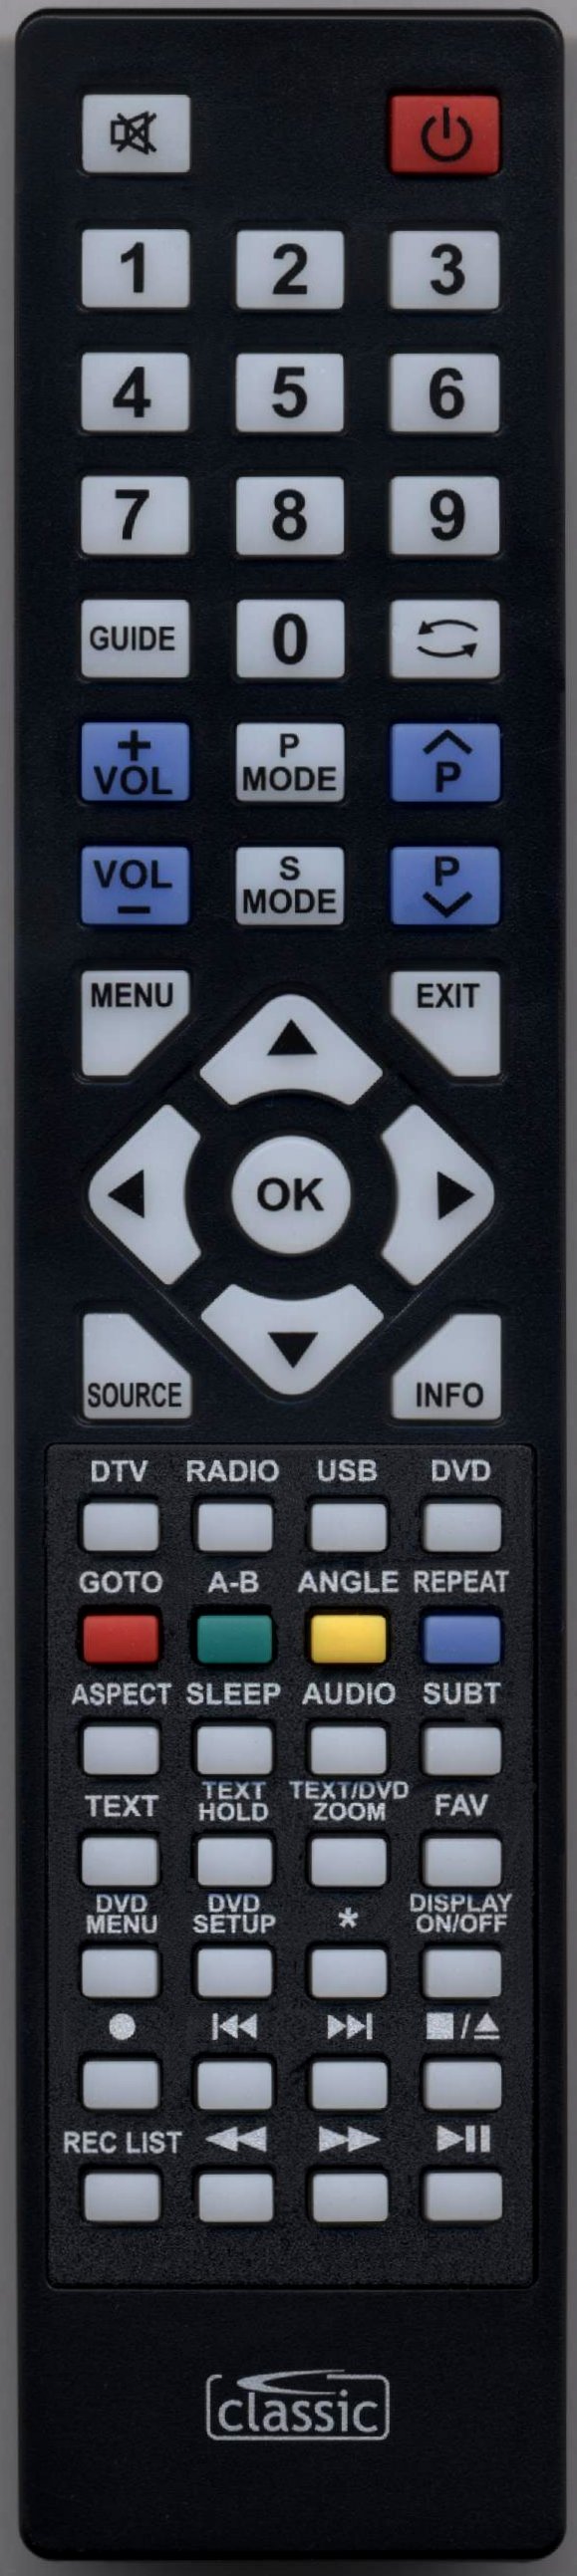 TECHNIKA 24E21B-FHD/DVD Remote Control Alternative